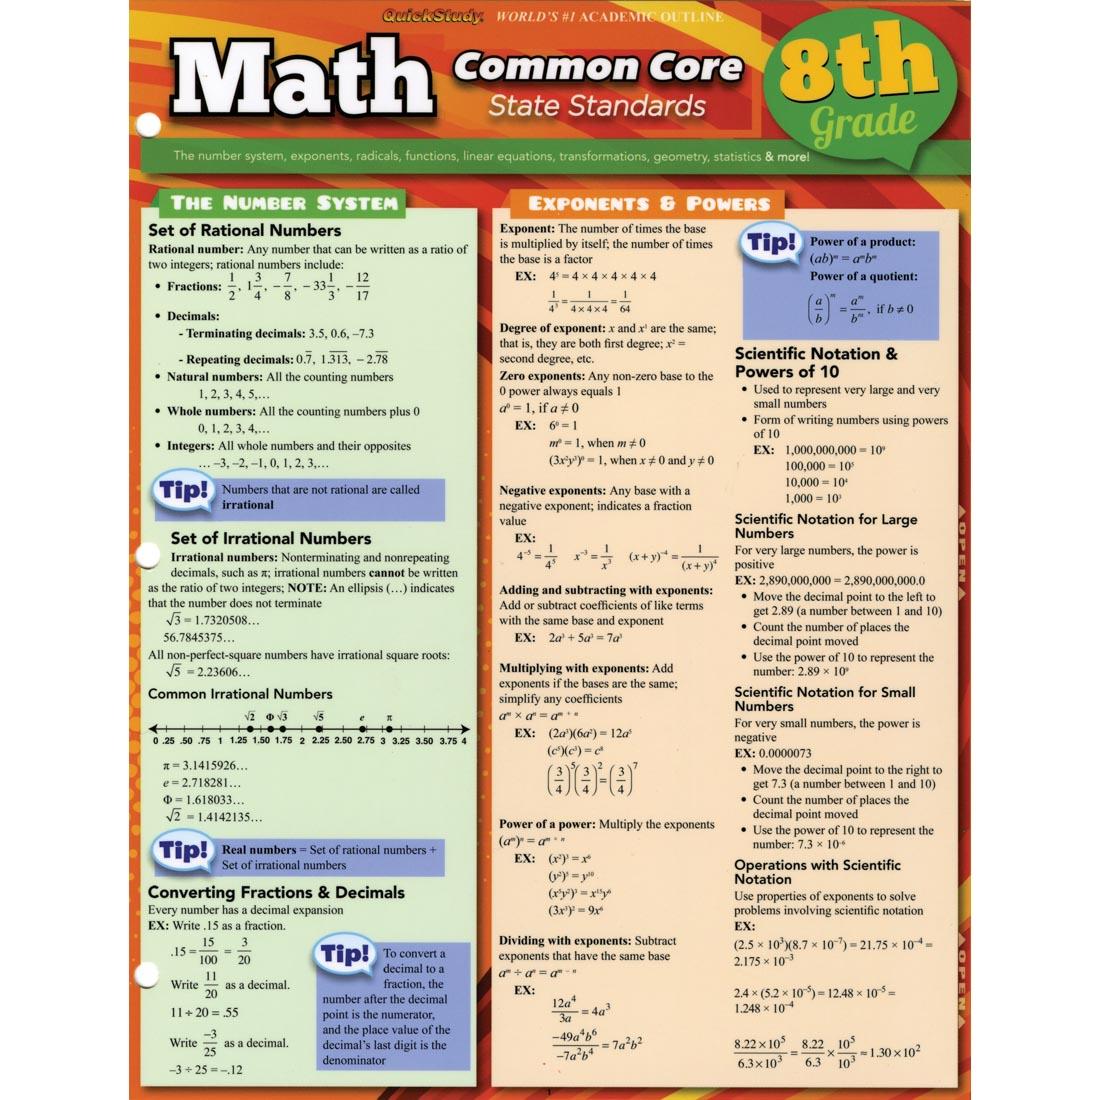 Common Core Math 8th Grade Study Guide